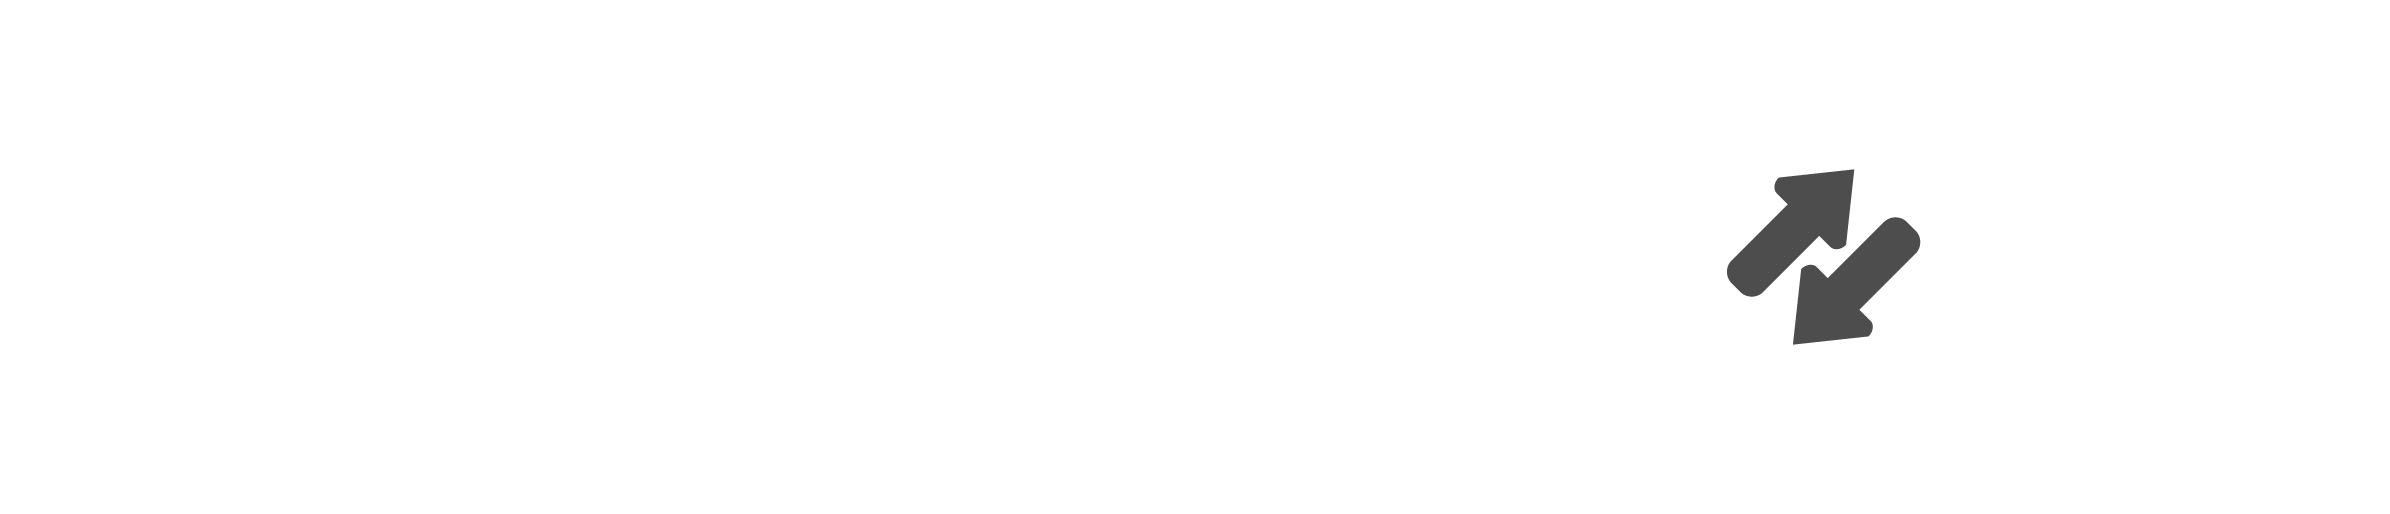 Logo-2B-&-Partner-ohne-BG